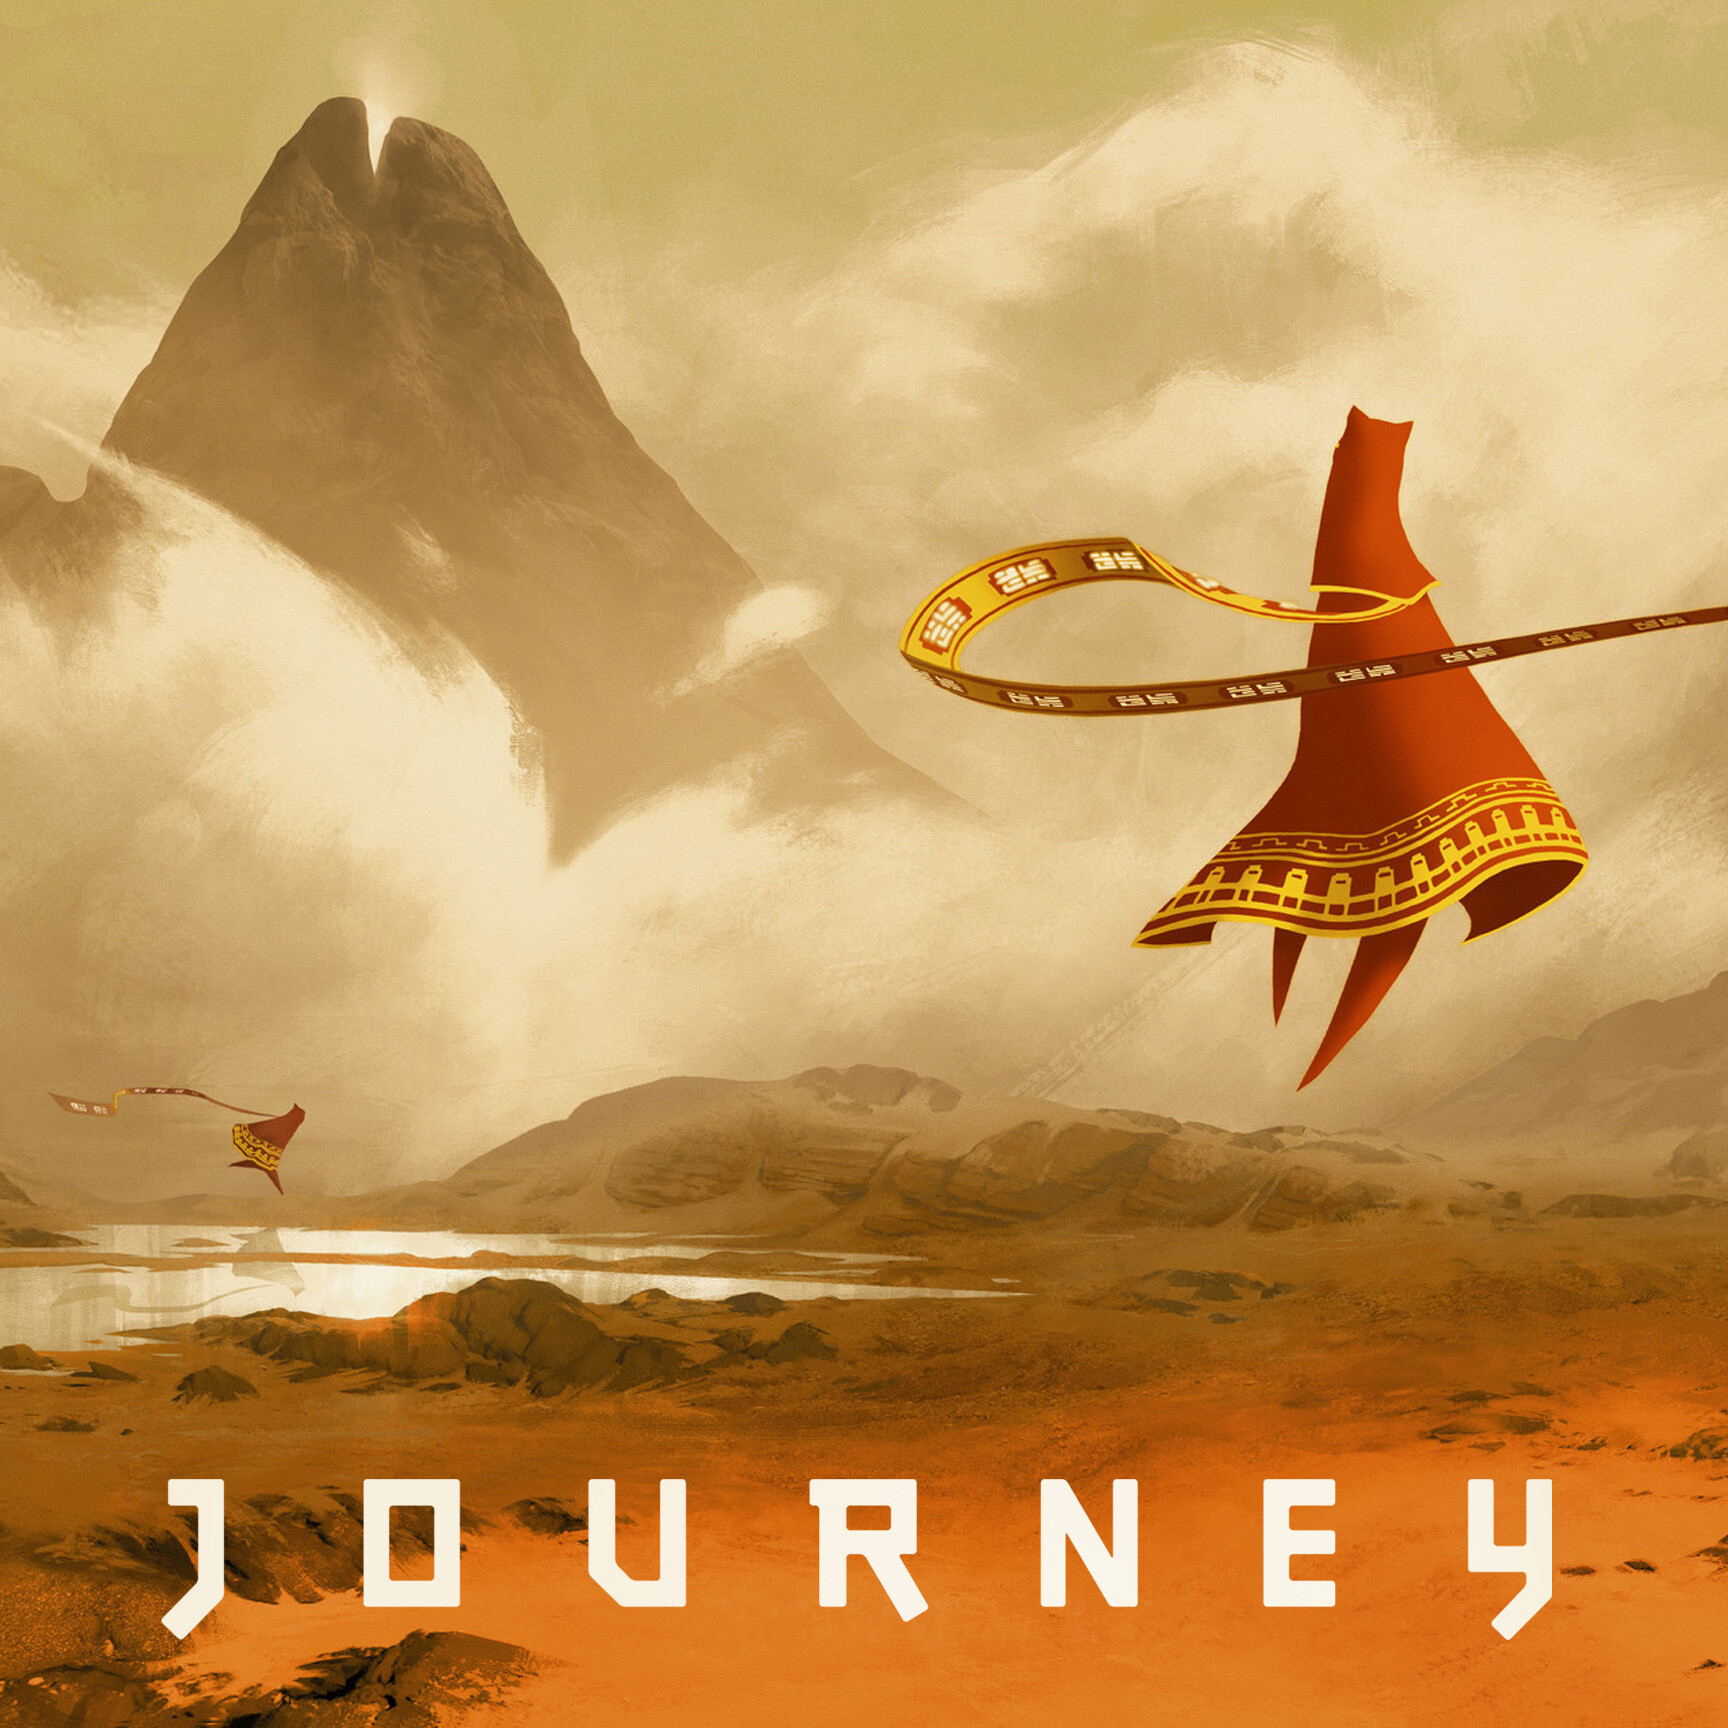 Full journey. Journey (игра, 2012). Journey thatgamecompany. Путешествие игра Journey. Джорни путешествие игра.